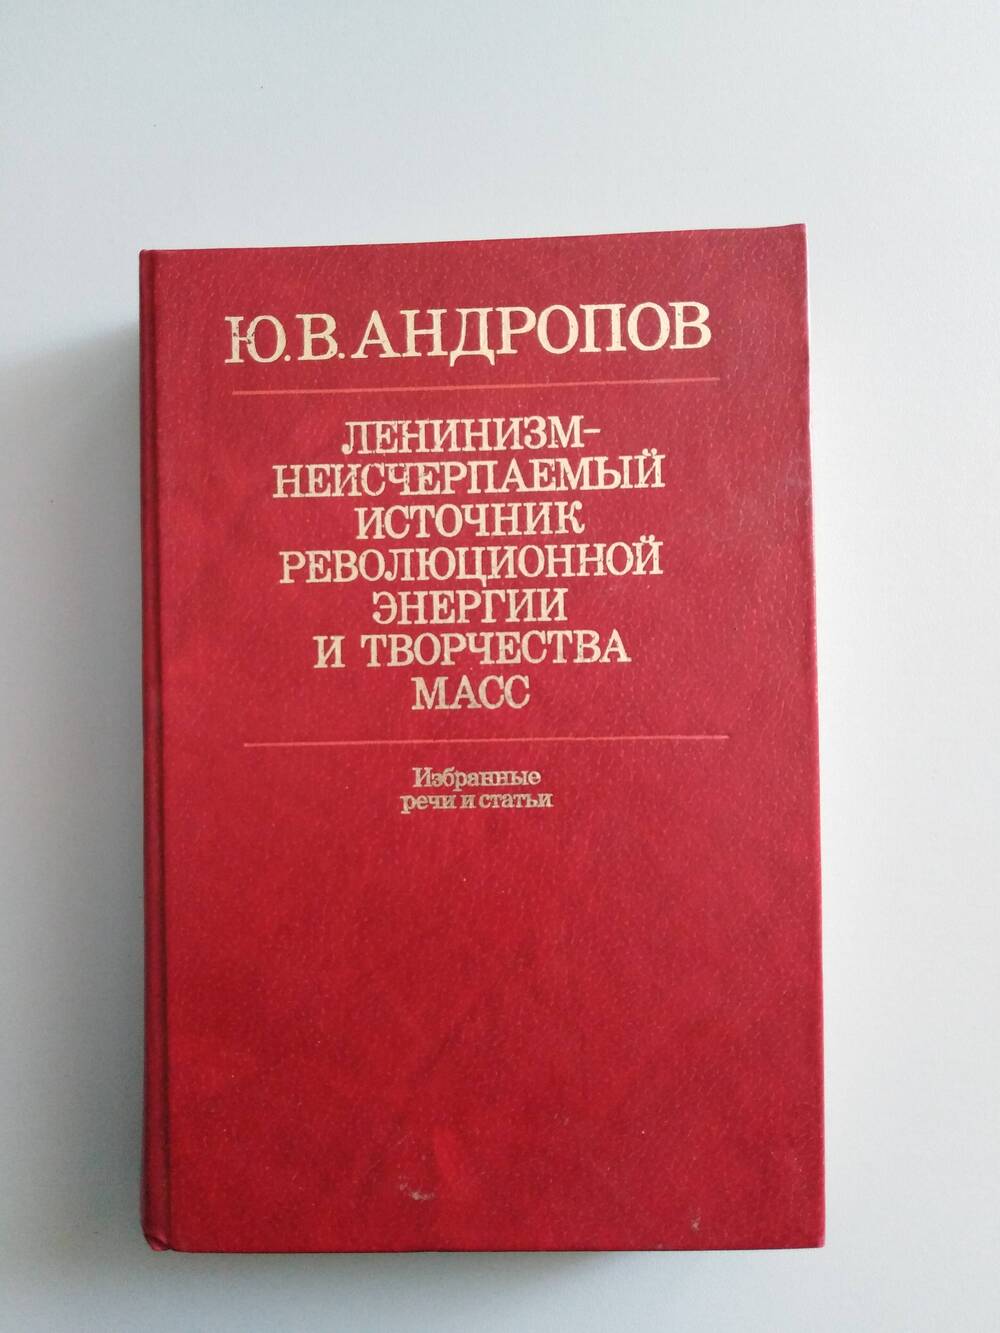 Книга «Ленинизм – неисчерпаемый источник революционной энергии и творчества масс»